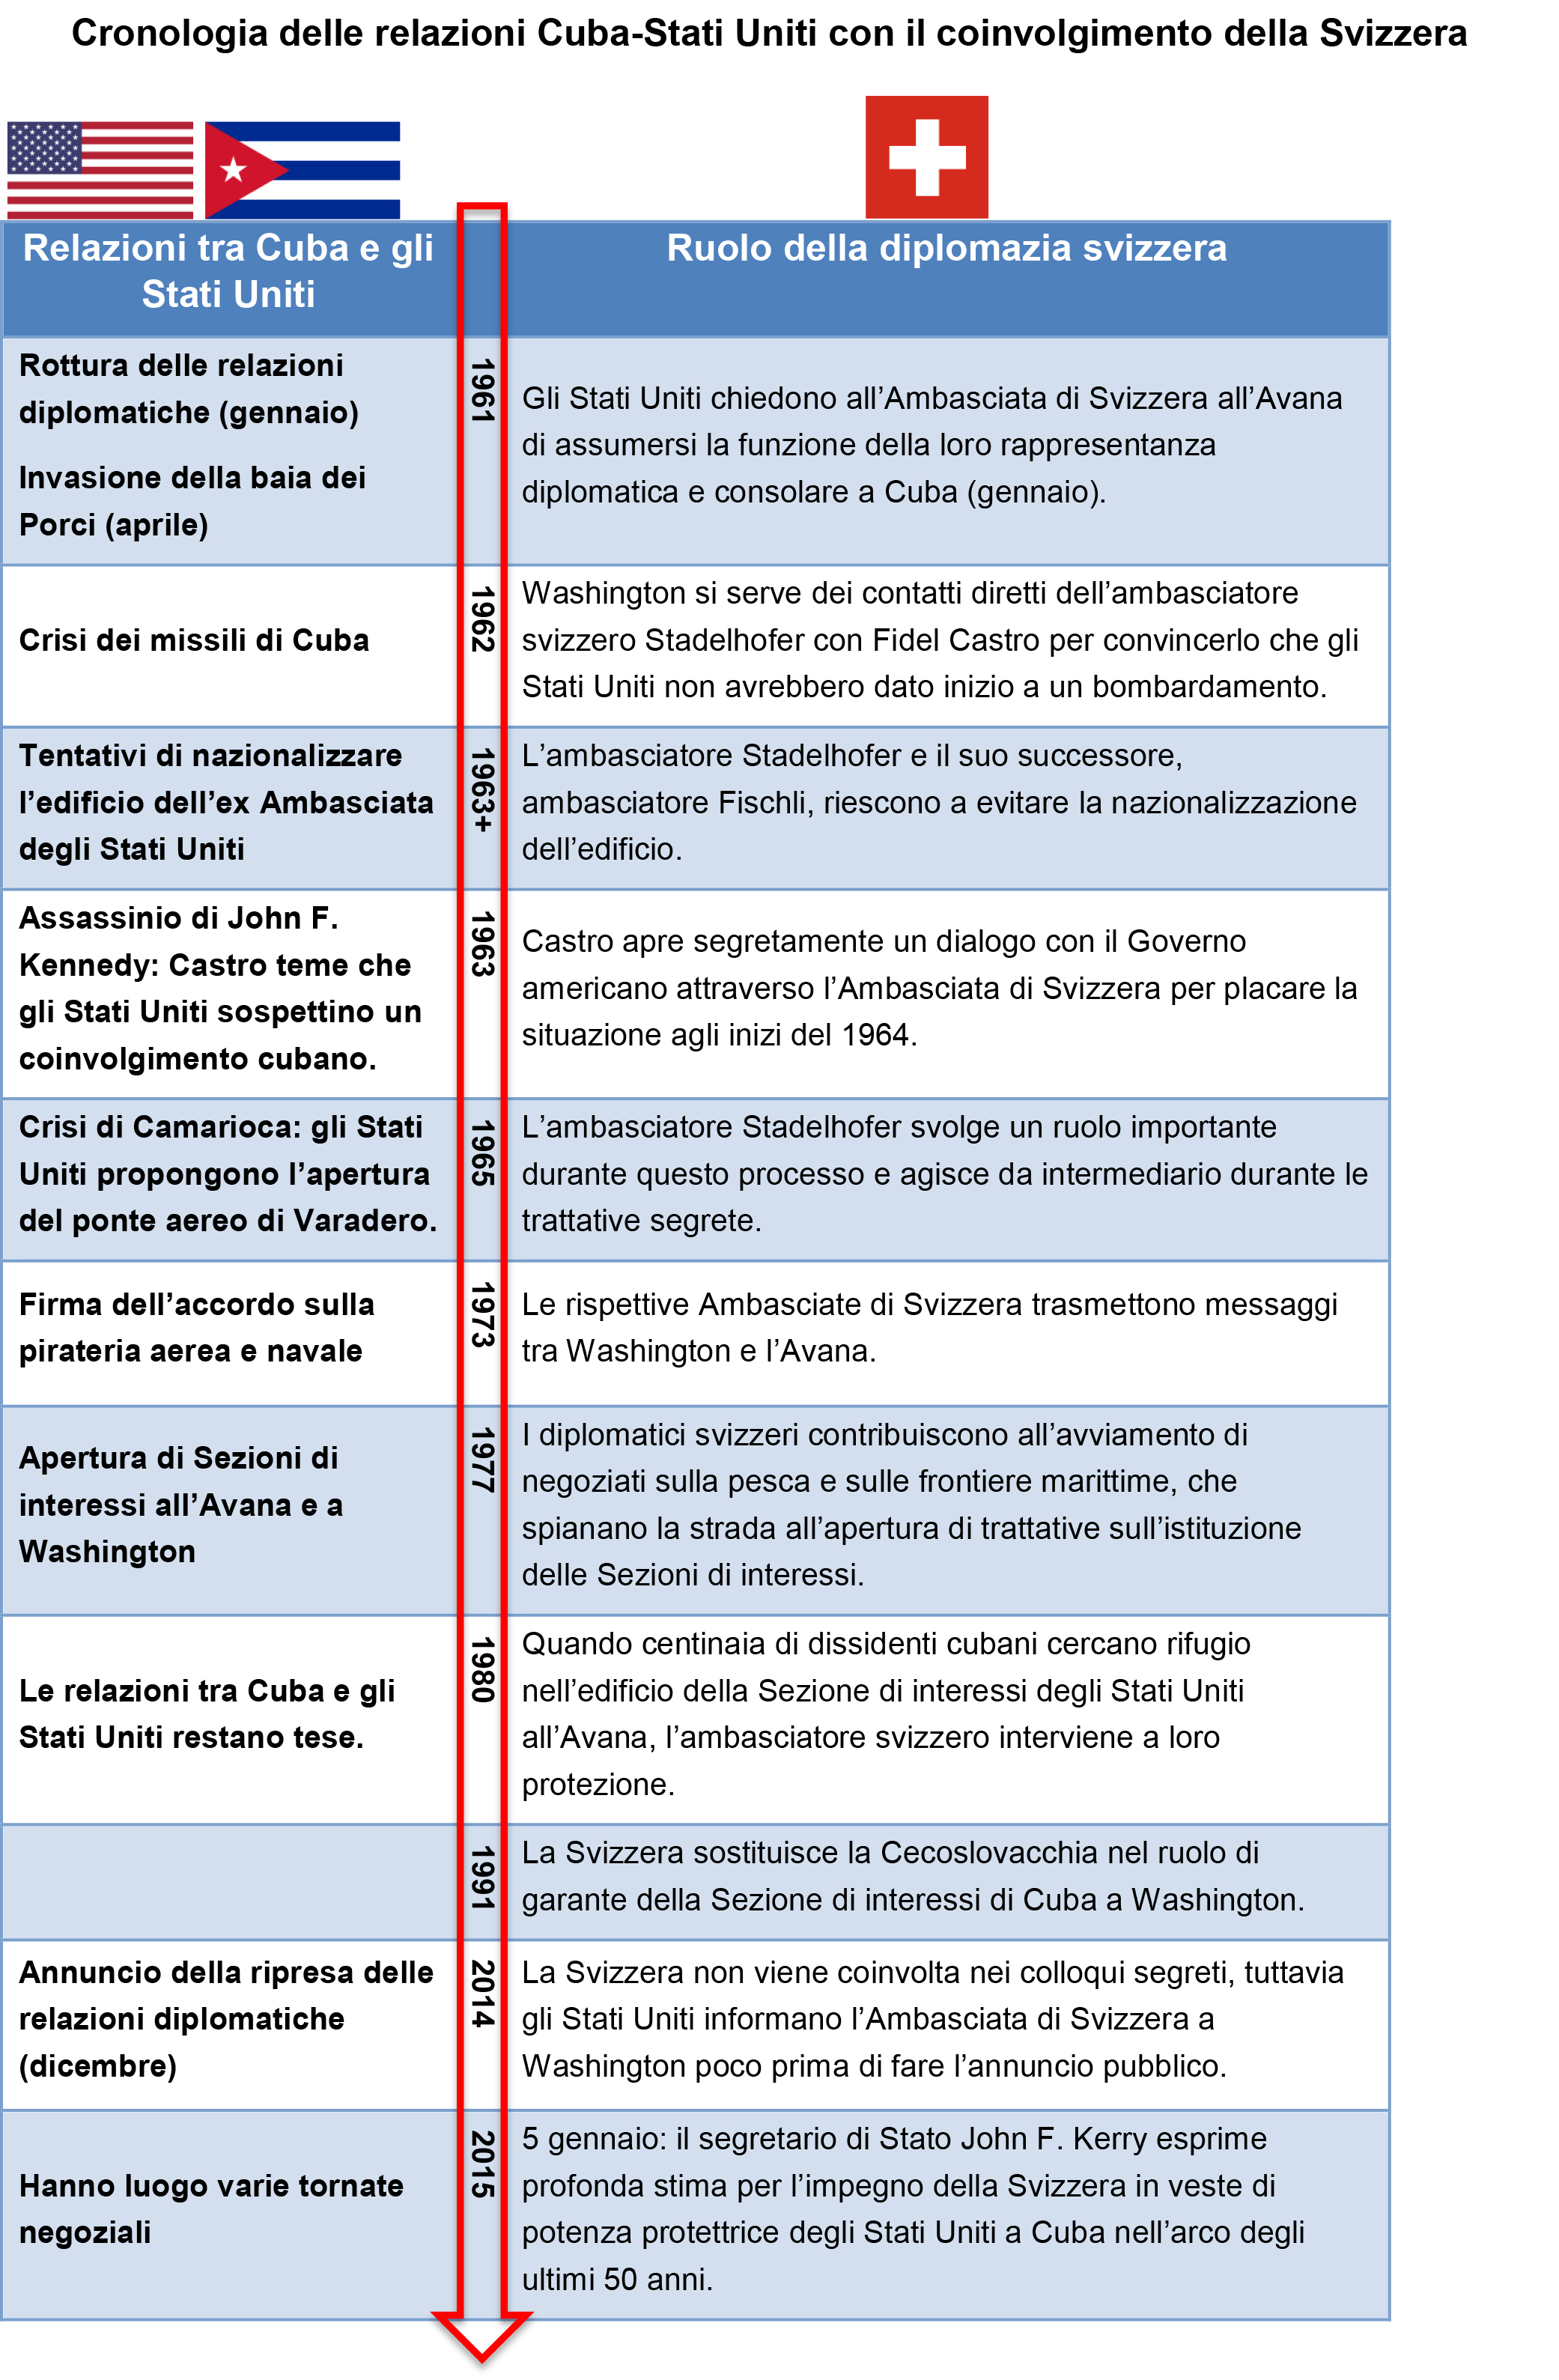 Cronologia delle relazioni Cuba-Stati Uniti con il coinvolgimento della Svizzera.